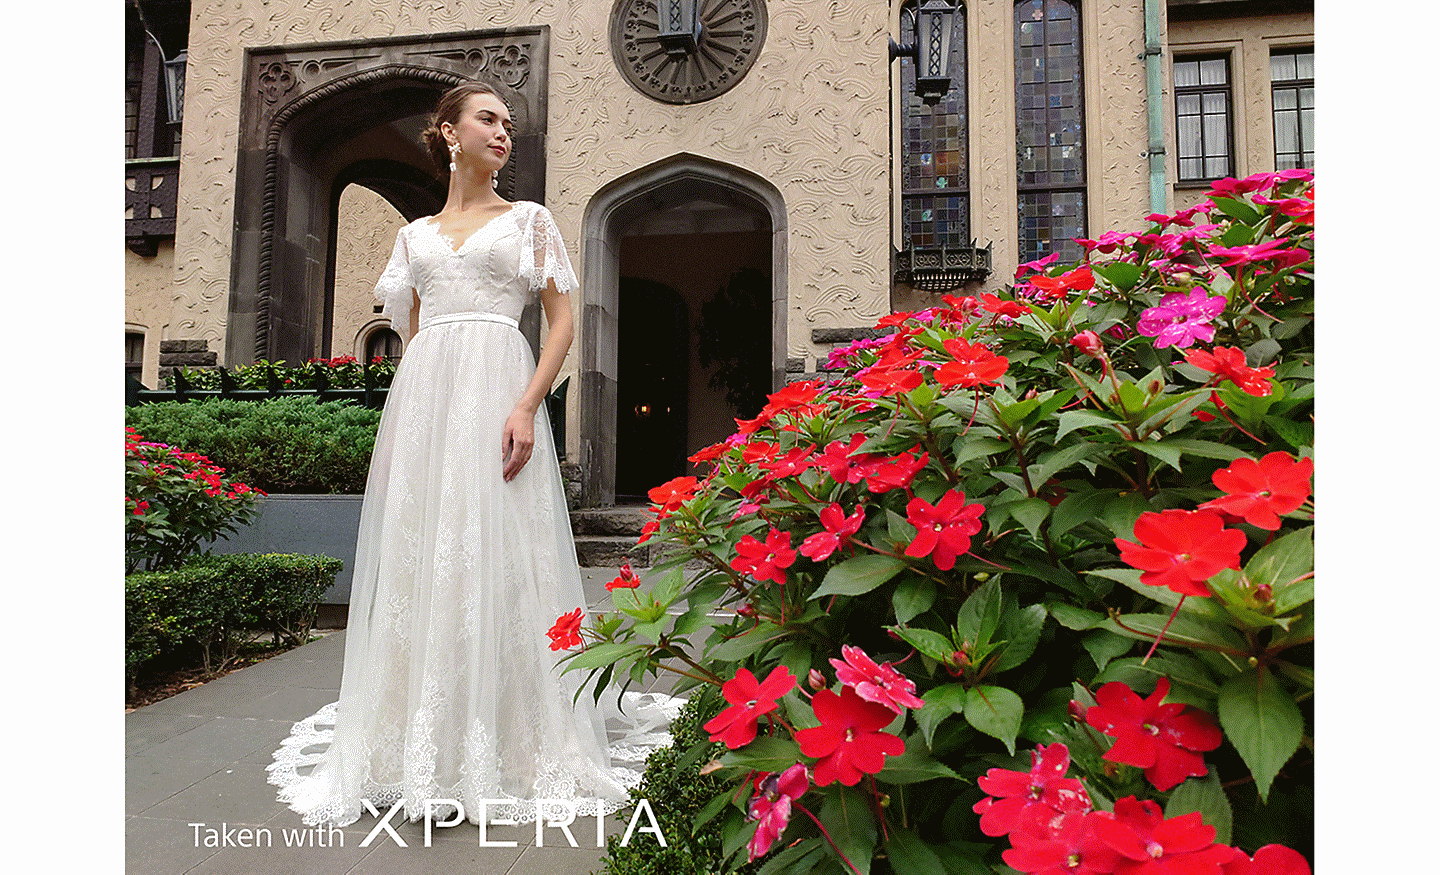 Une mariée posant devant un bâtiment avec des fleurs rouges au premier plan. Le texte indique : « Photo prise avec un XPERIA ».